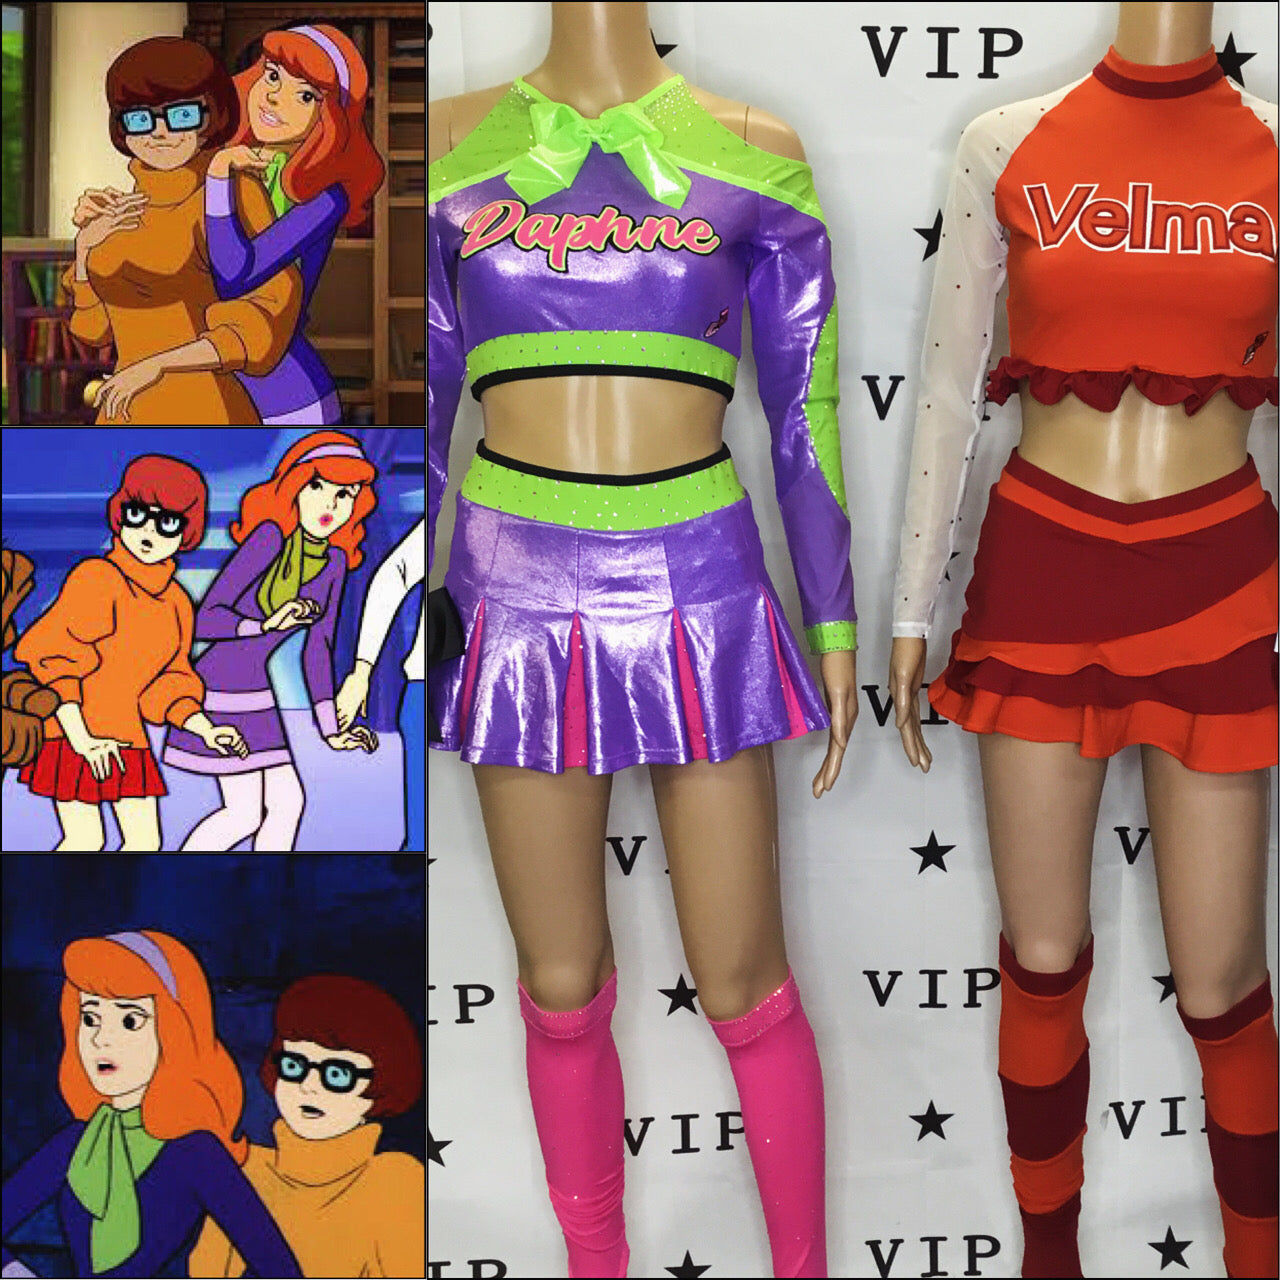 Velma inspired cheerleading uni